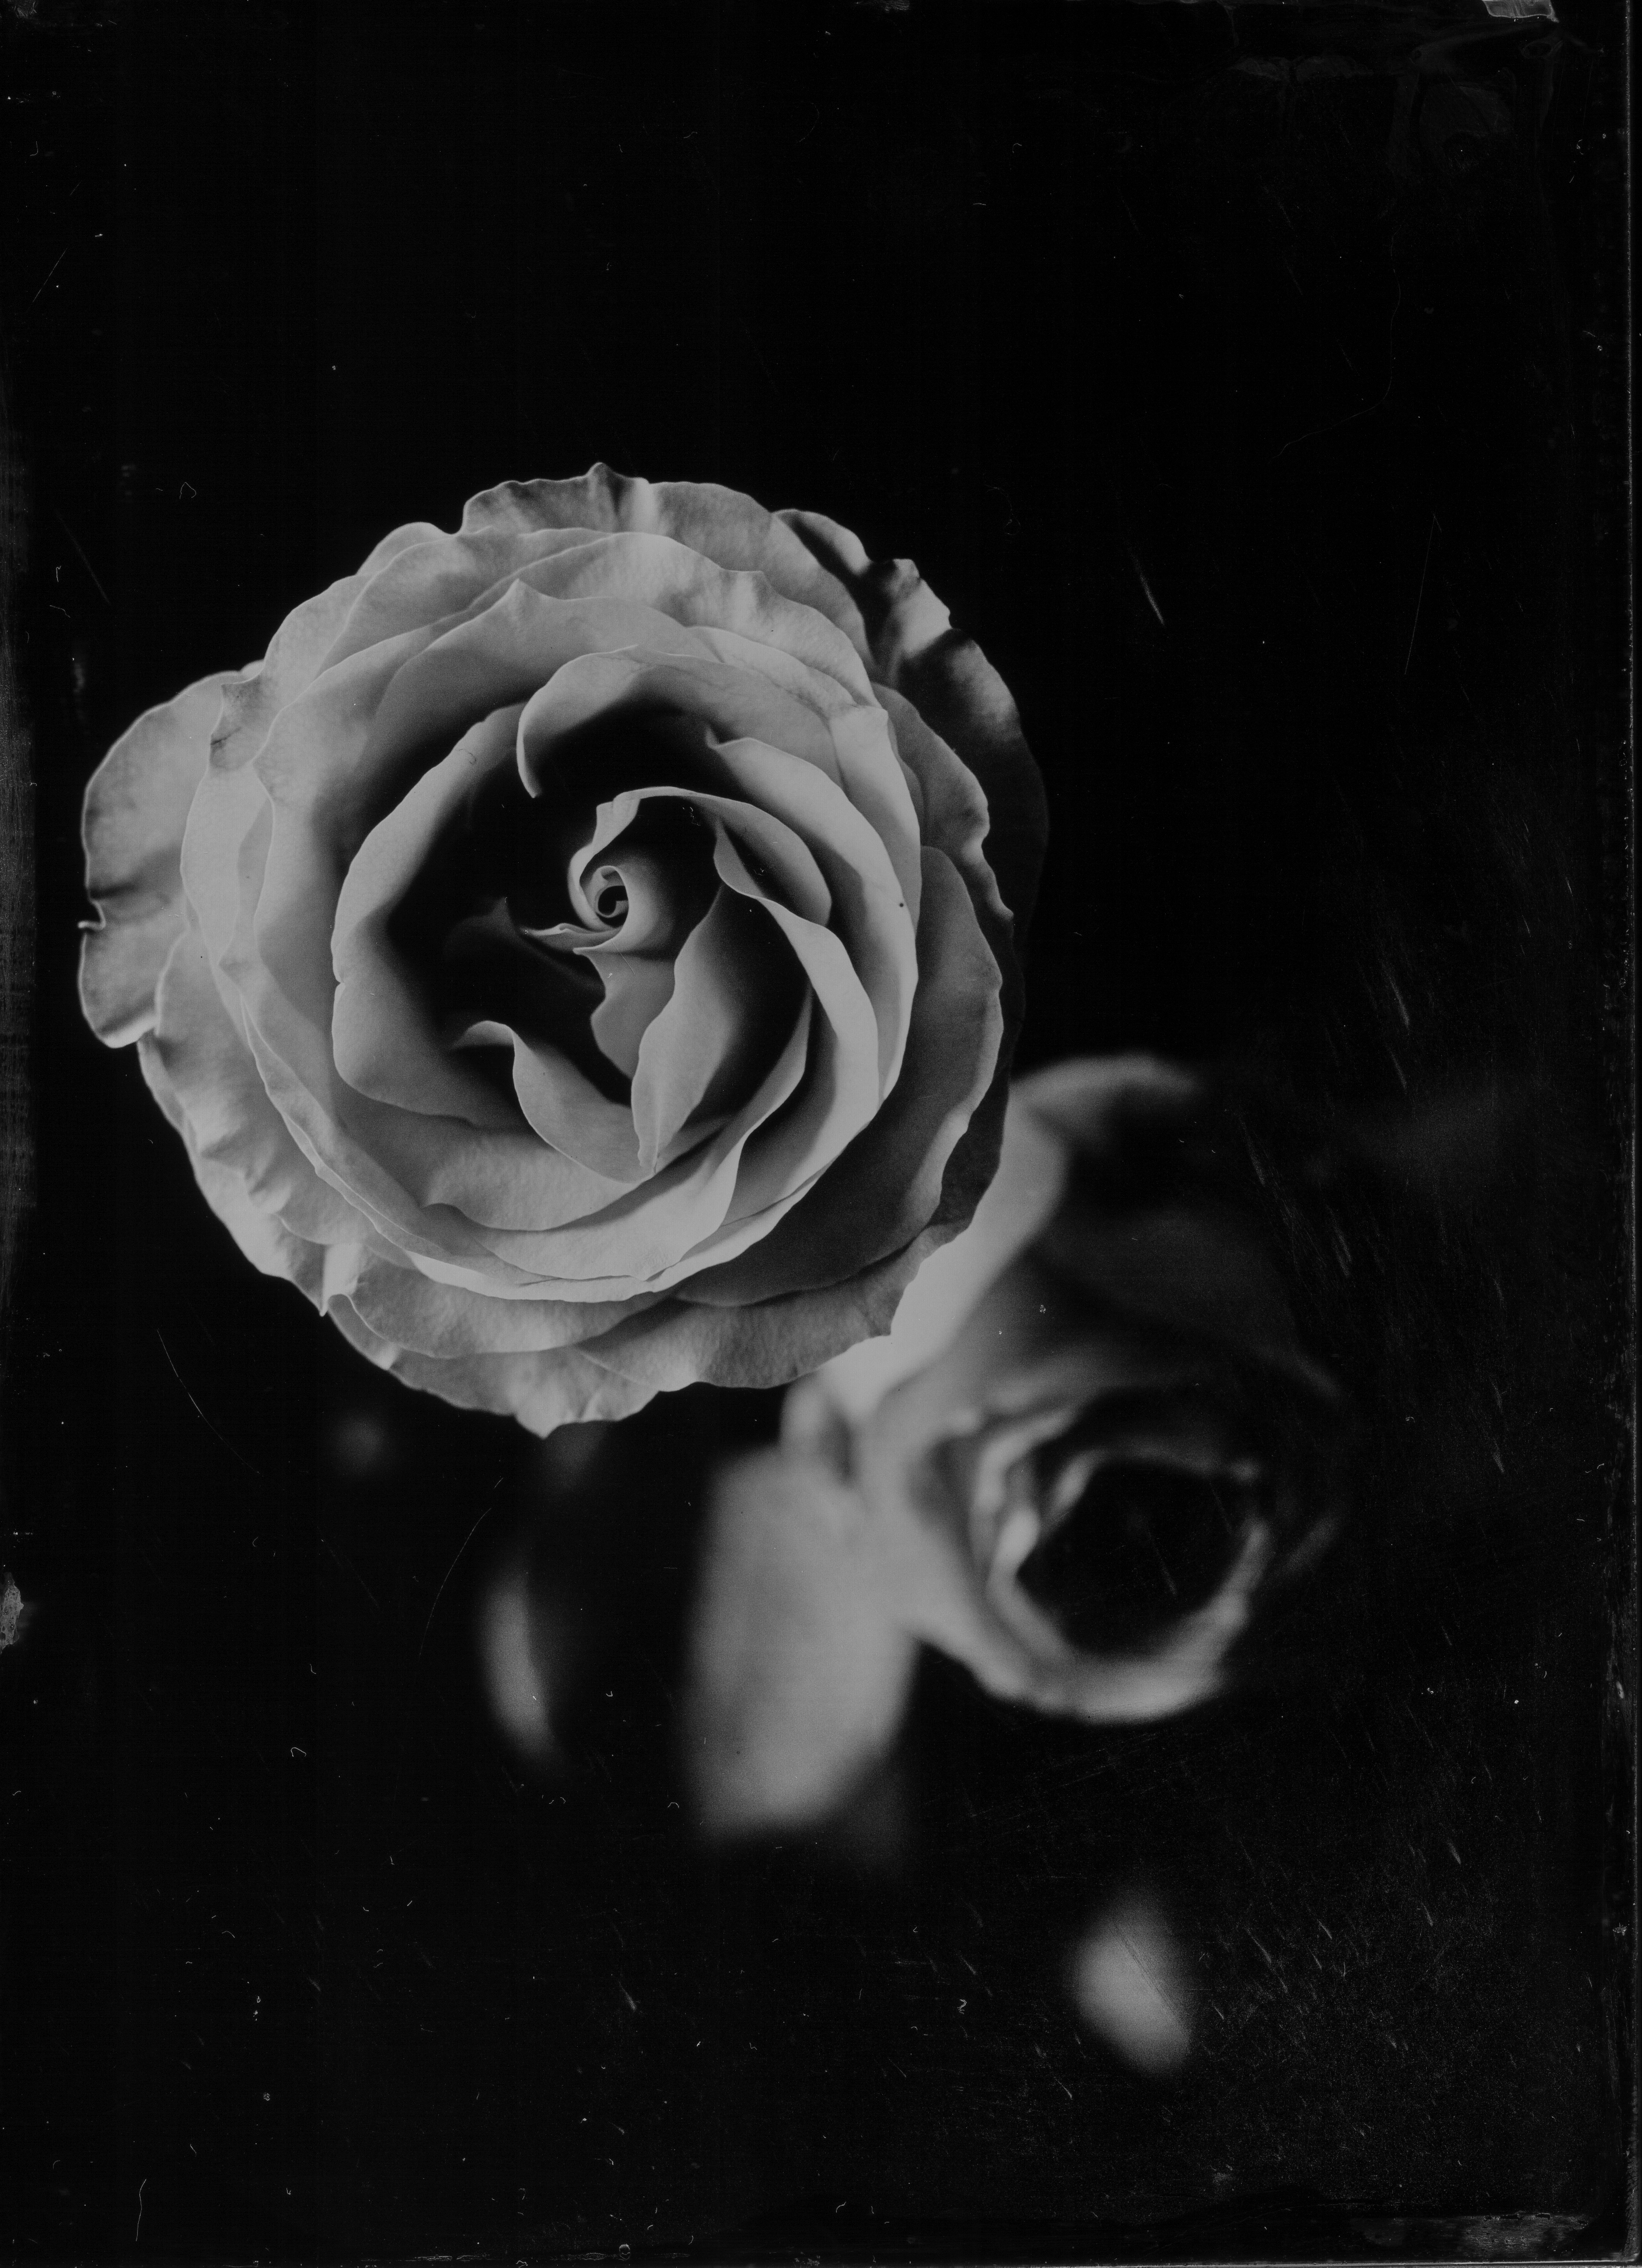 Ambrótipo produzido por Sassaki com o close de uma rosa: processo é uma variante da placa úmida de colódio, um positivo em base de vidro